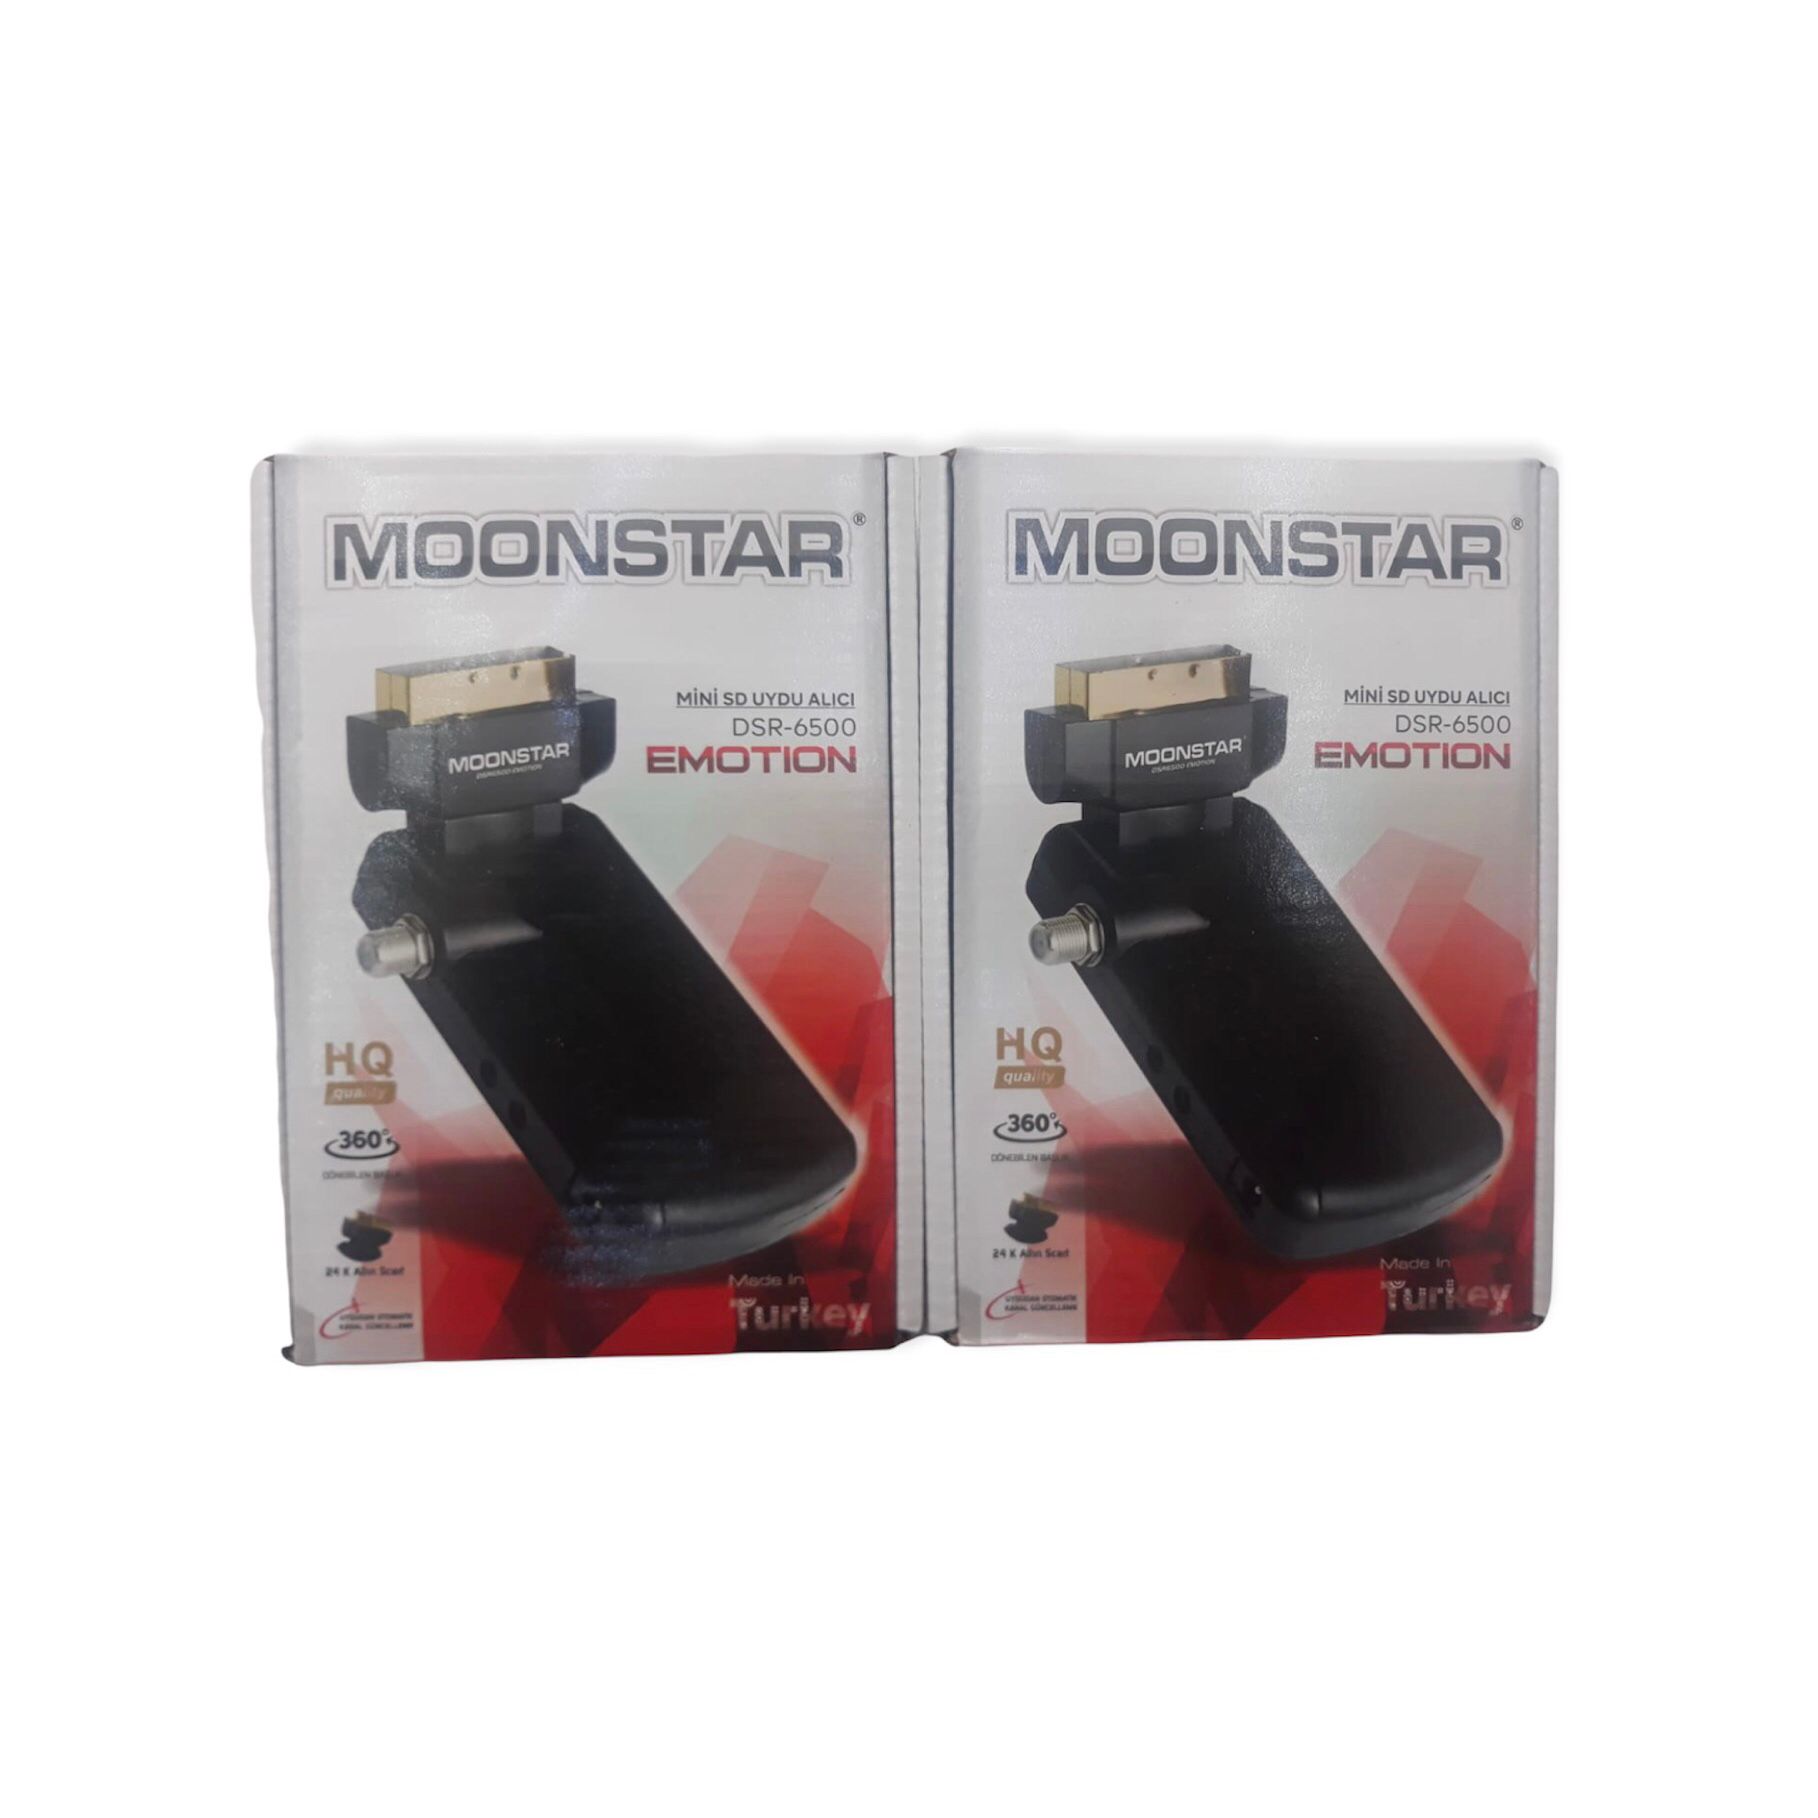  Moonstar DSR 6500 Emotion Uydu Alıcısı